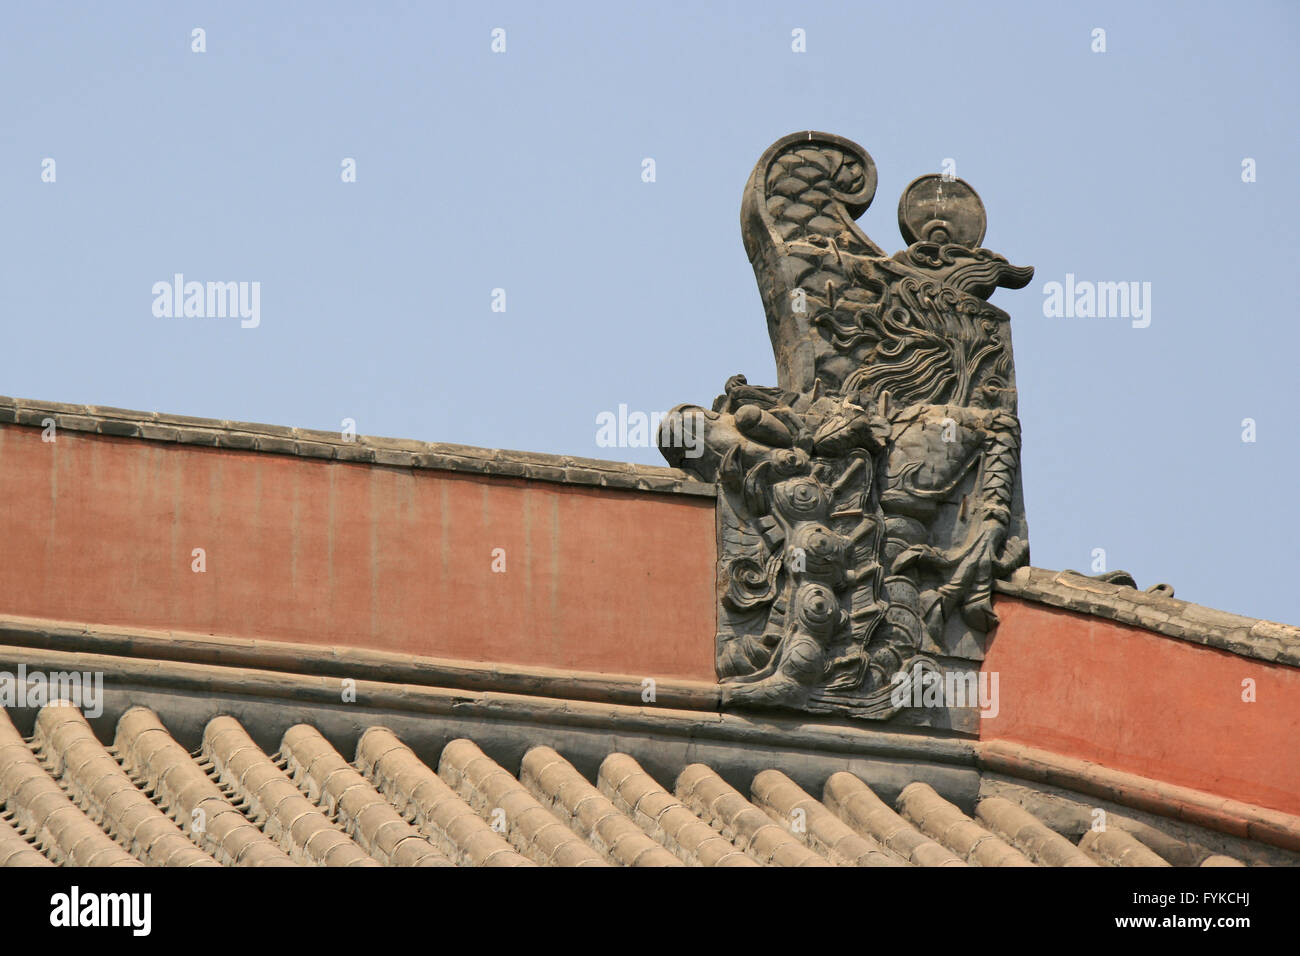 Ein geschnitzte Drachen schmückt die Firststange des Daches eines buddhistischen Tempels (Shanhua) in Datong (China). Stockfoto